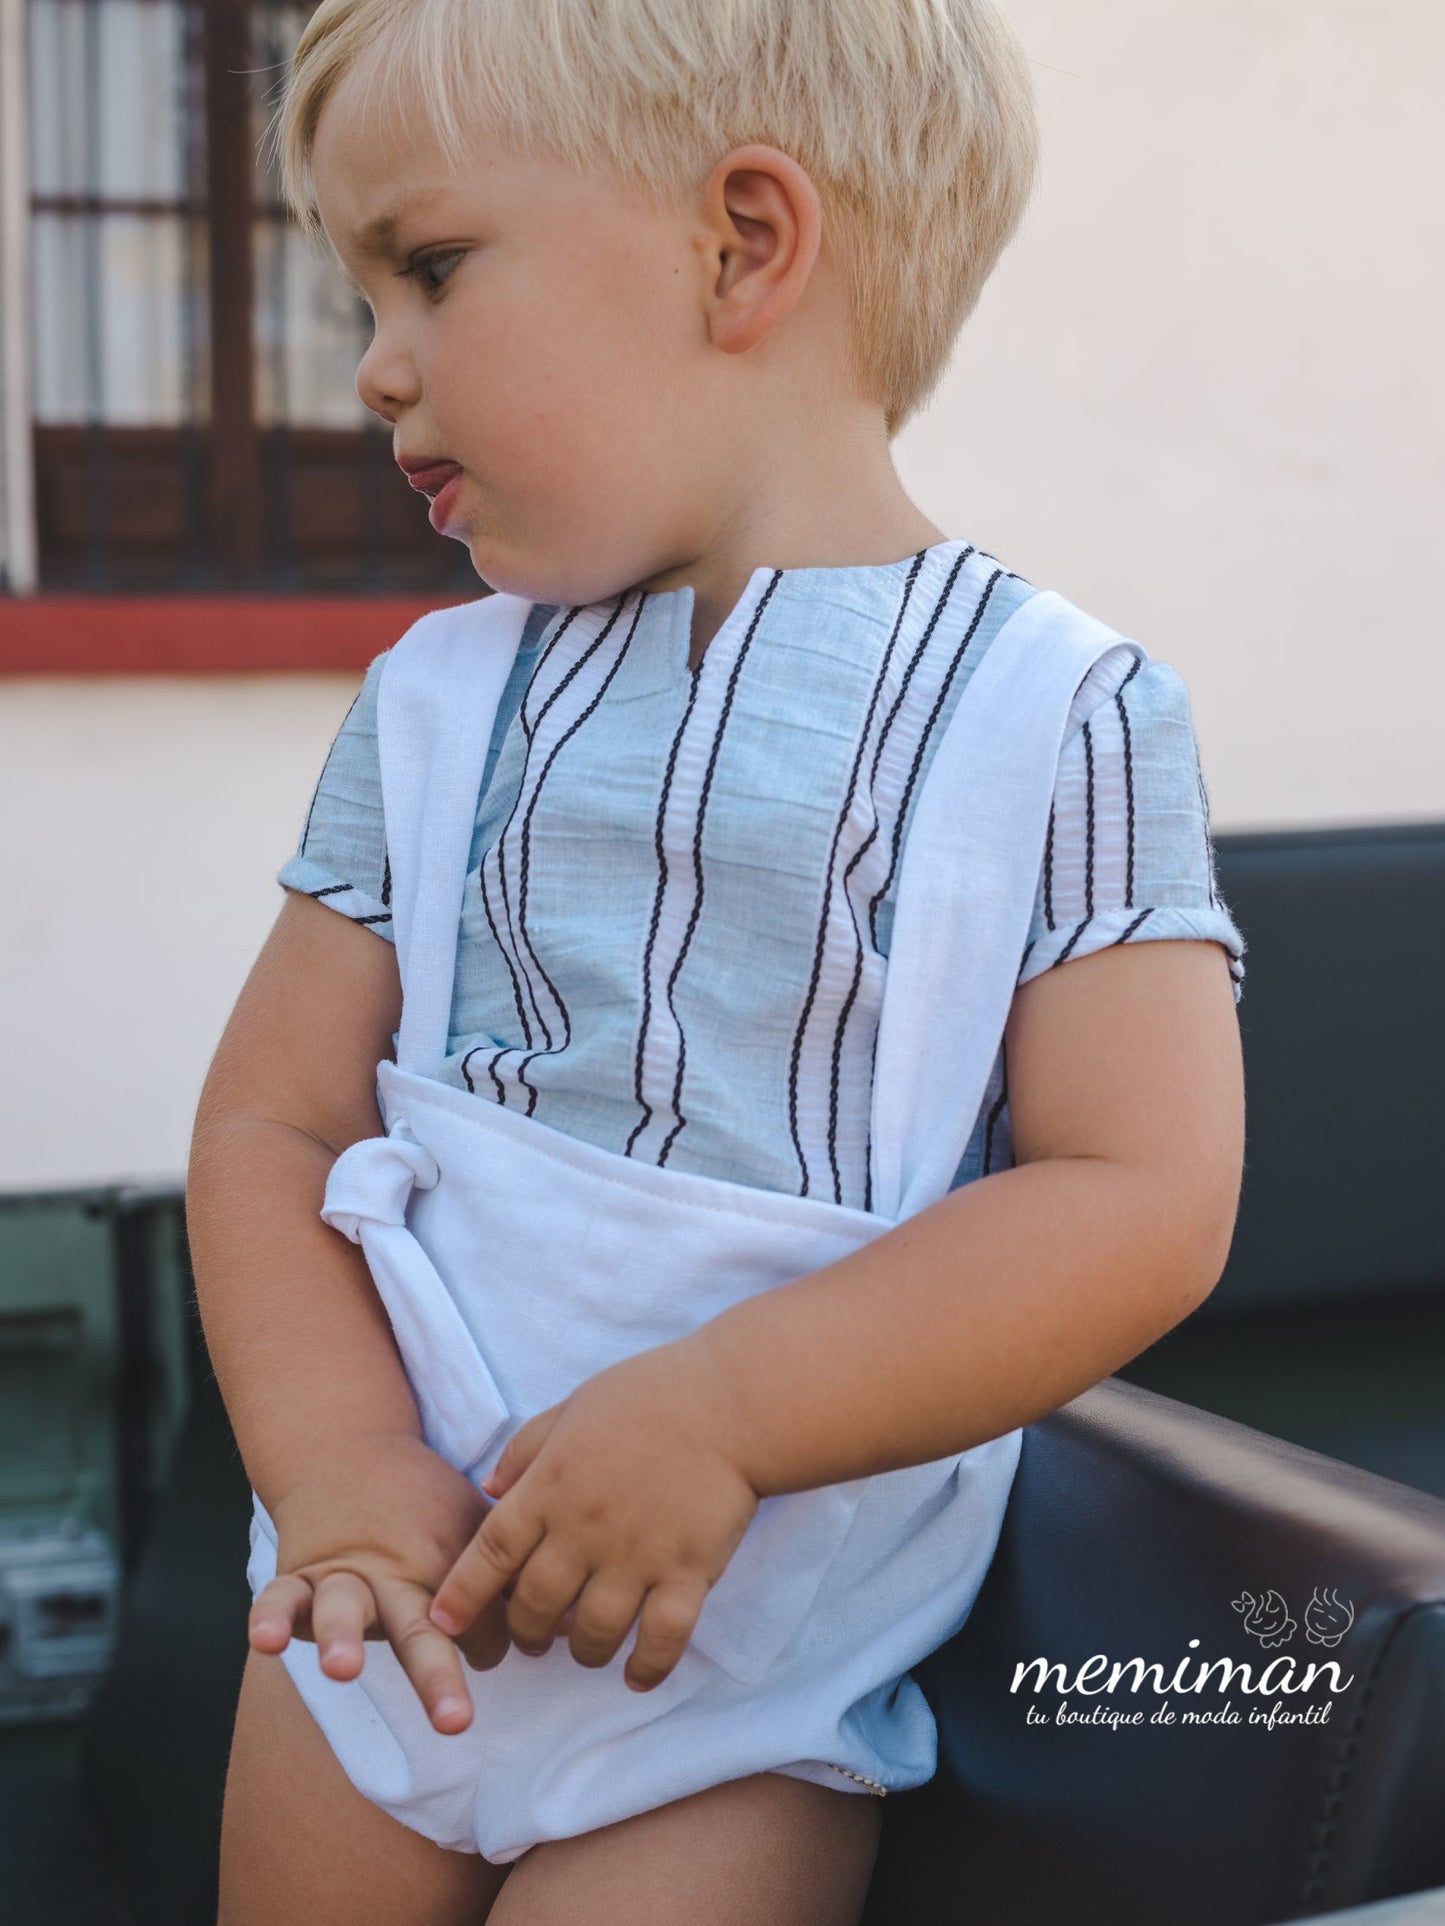 01-46023 Conjunto bebé blanco camisa rayas